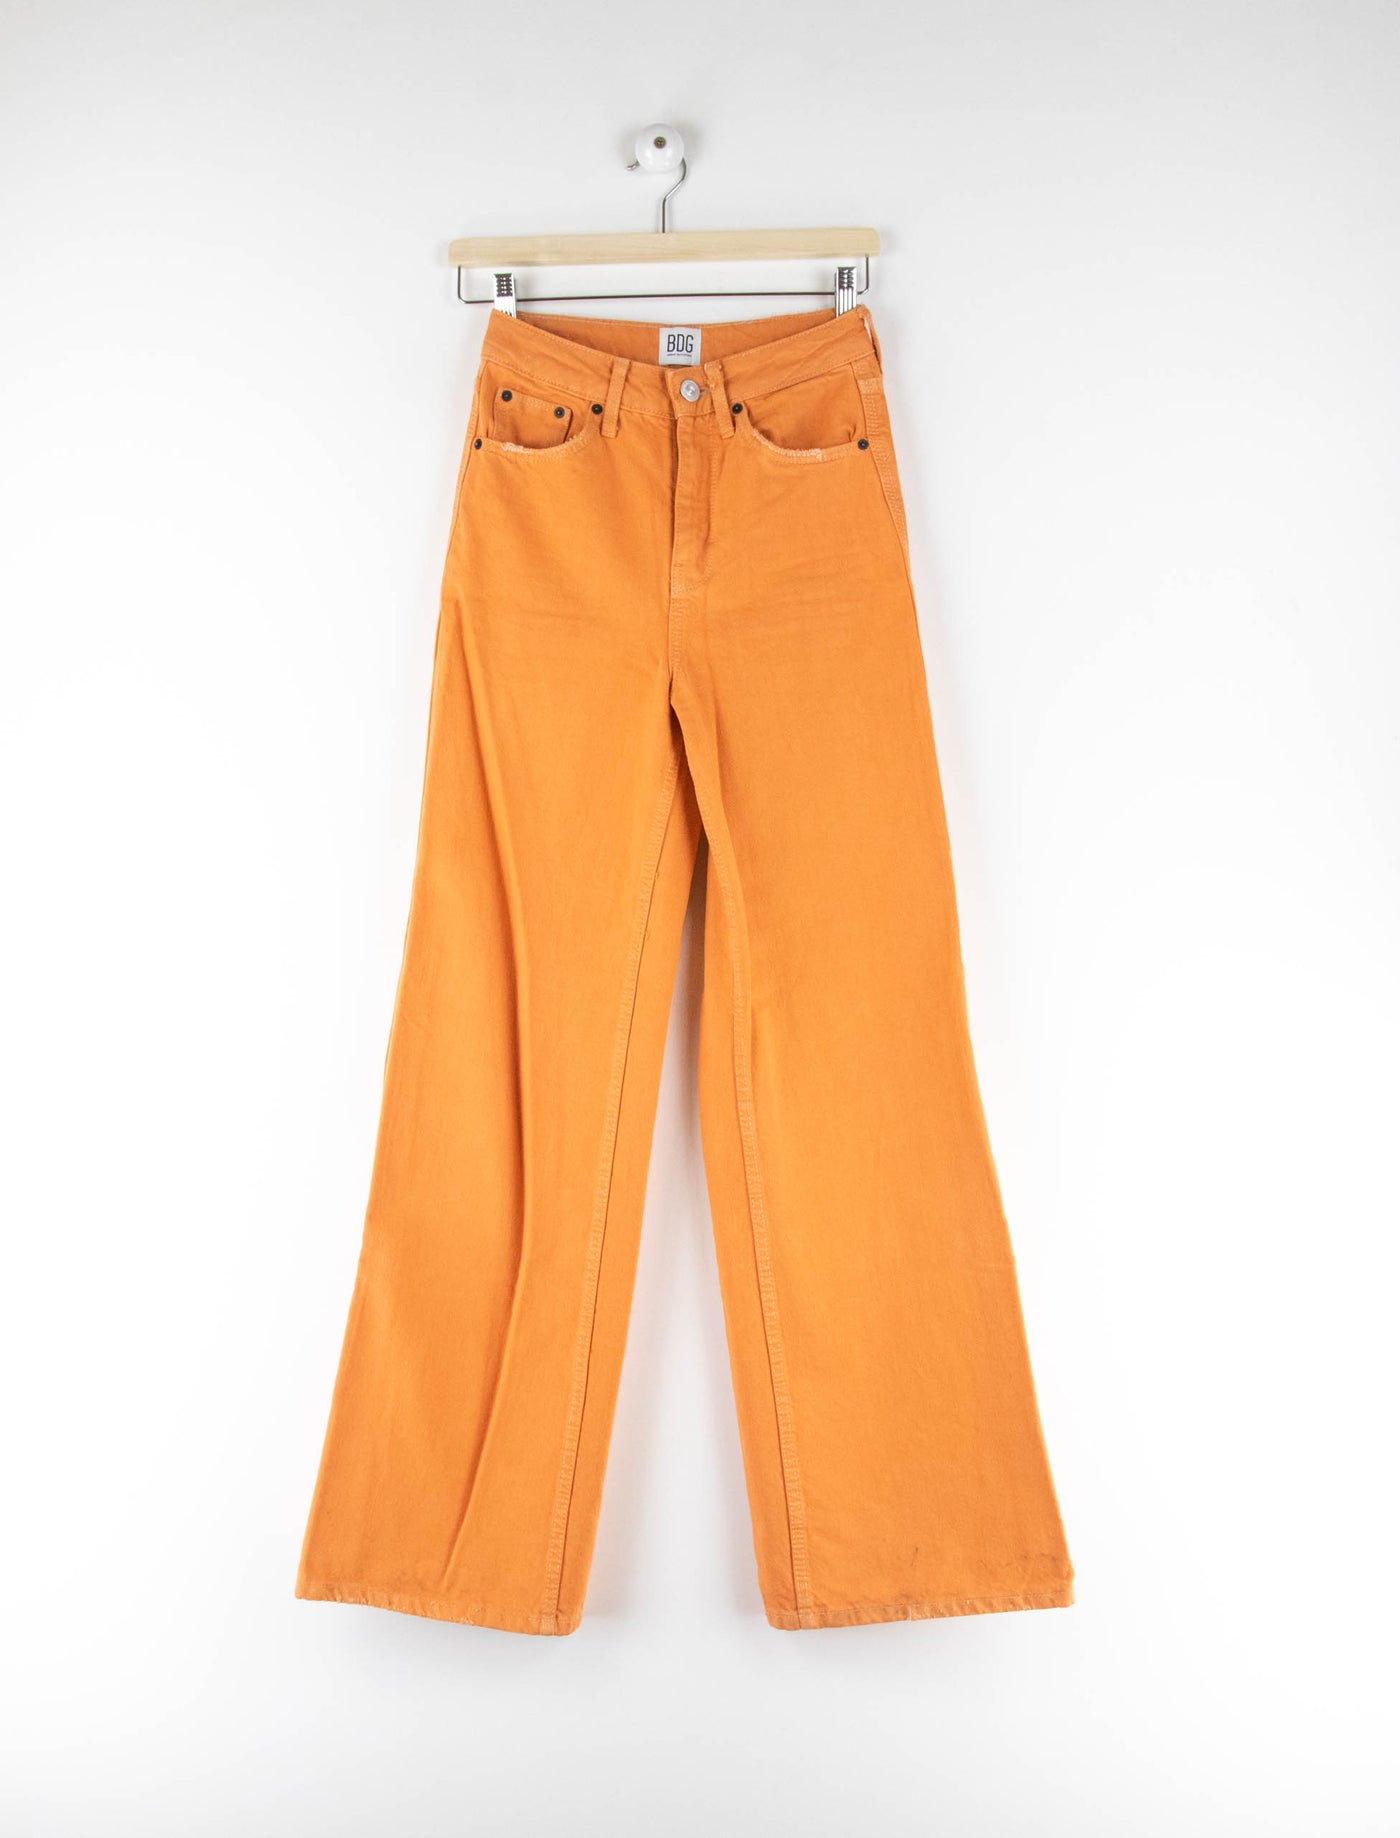 Pantalón vaquero naranja